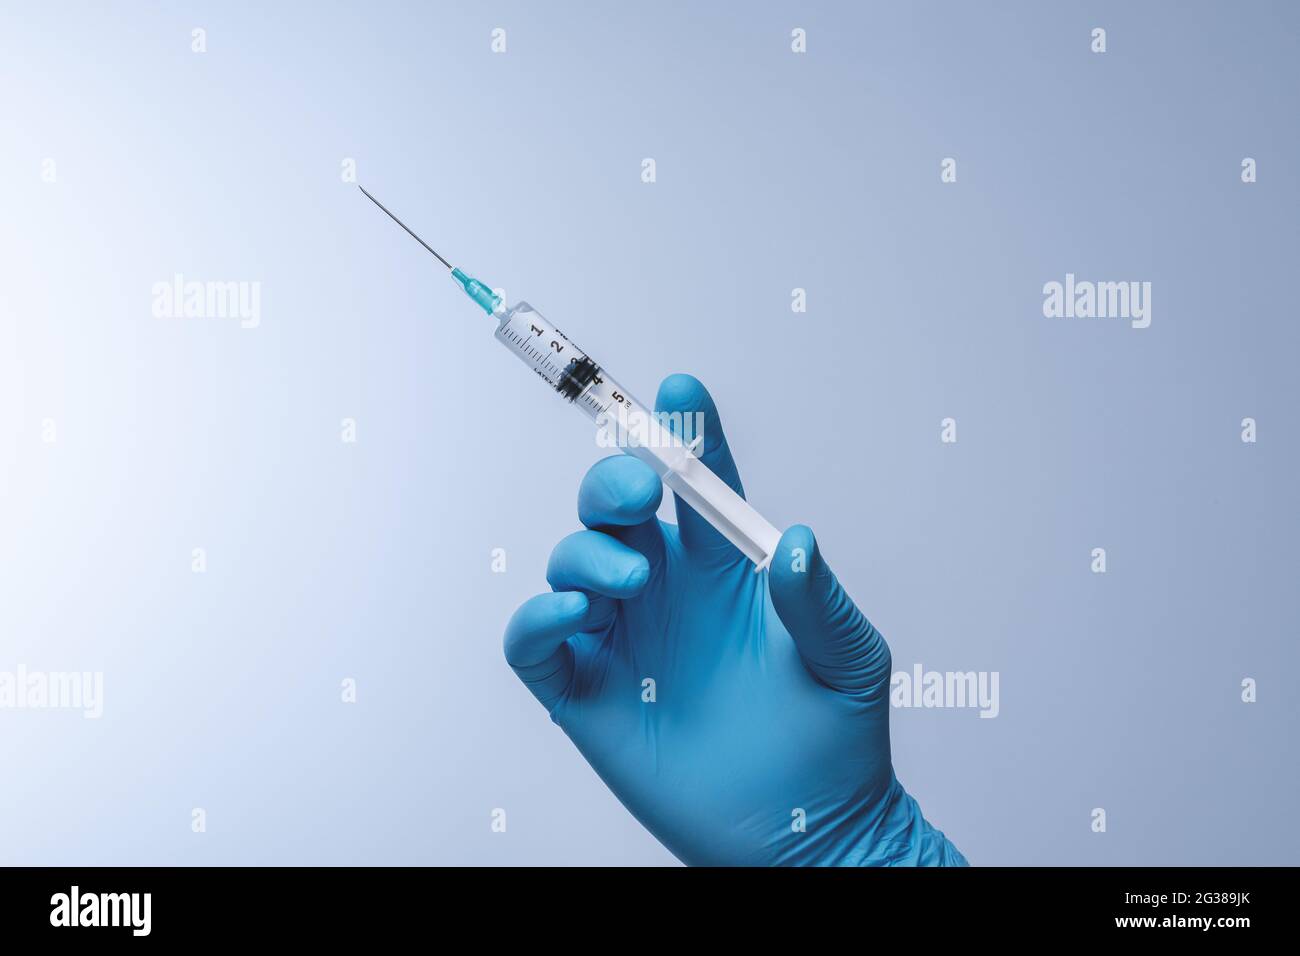 Medico in guanti di lattice blu con siringa. Vaccinazione, immunizzazione, trattamento per infezione da virus Corona Covid 19. Concetto sanitario e medico. Foto Stock